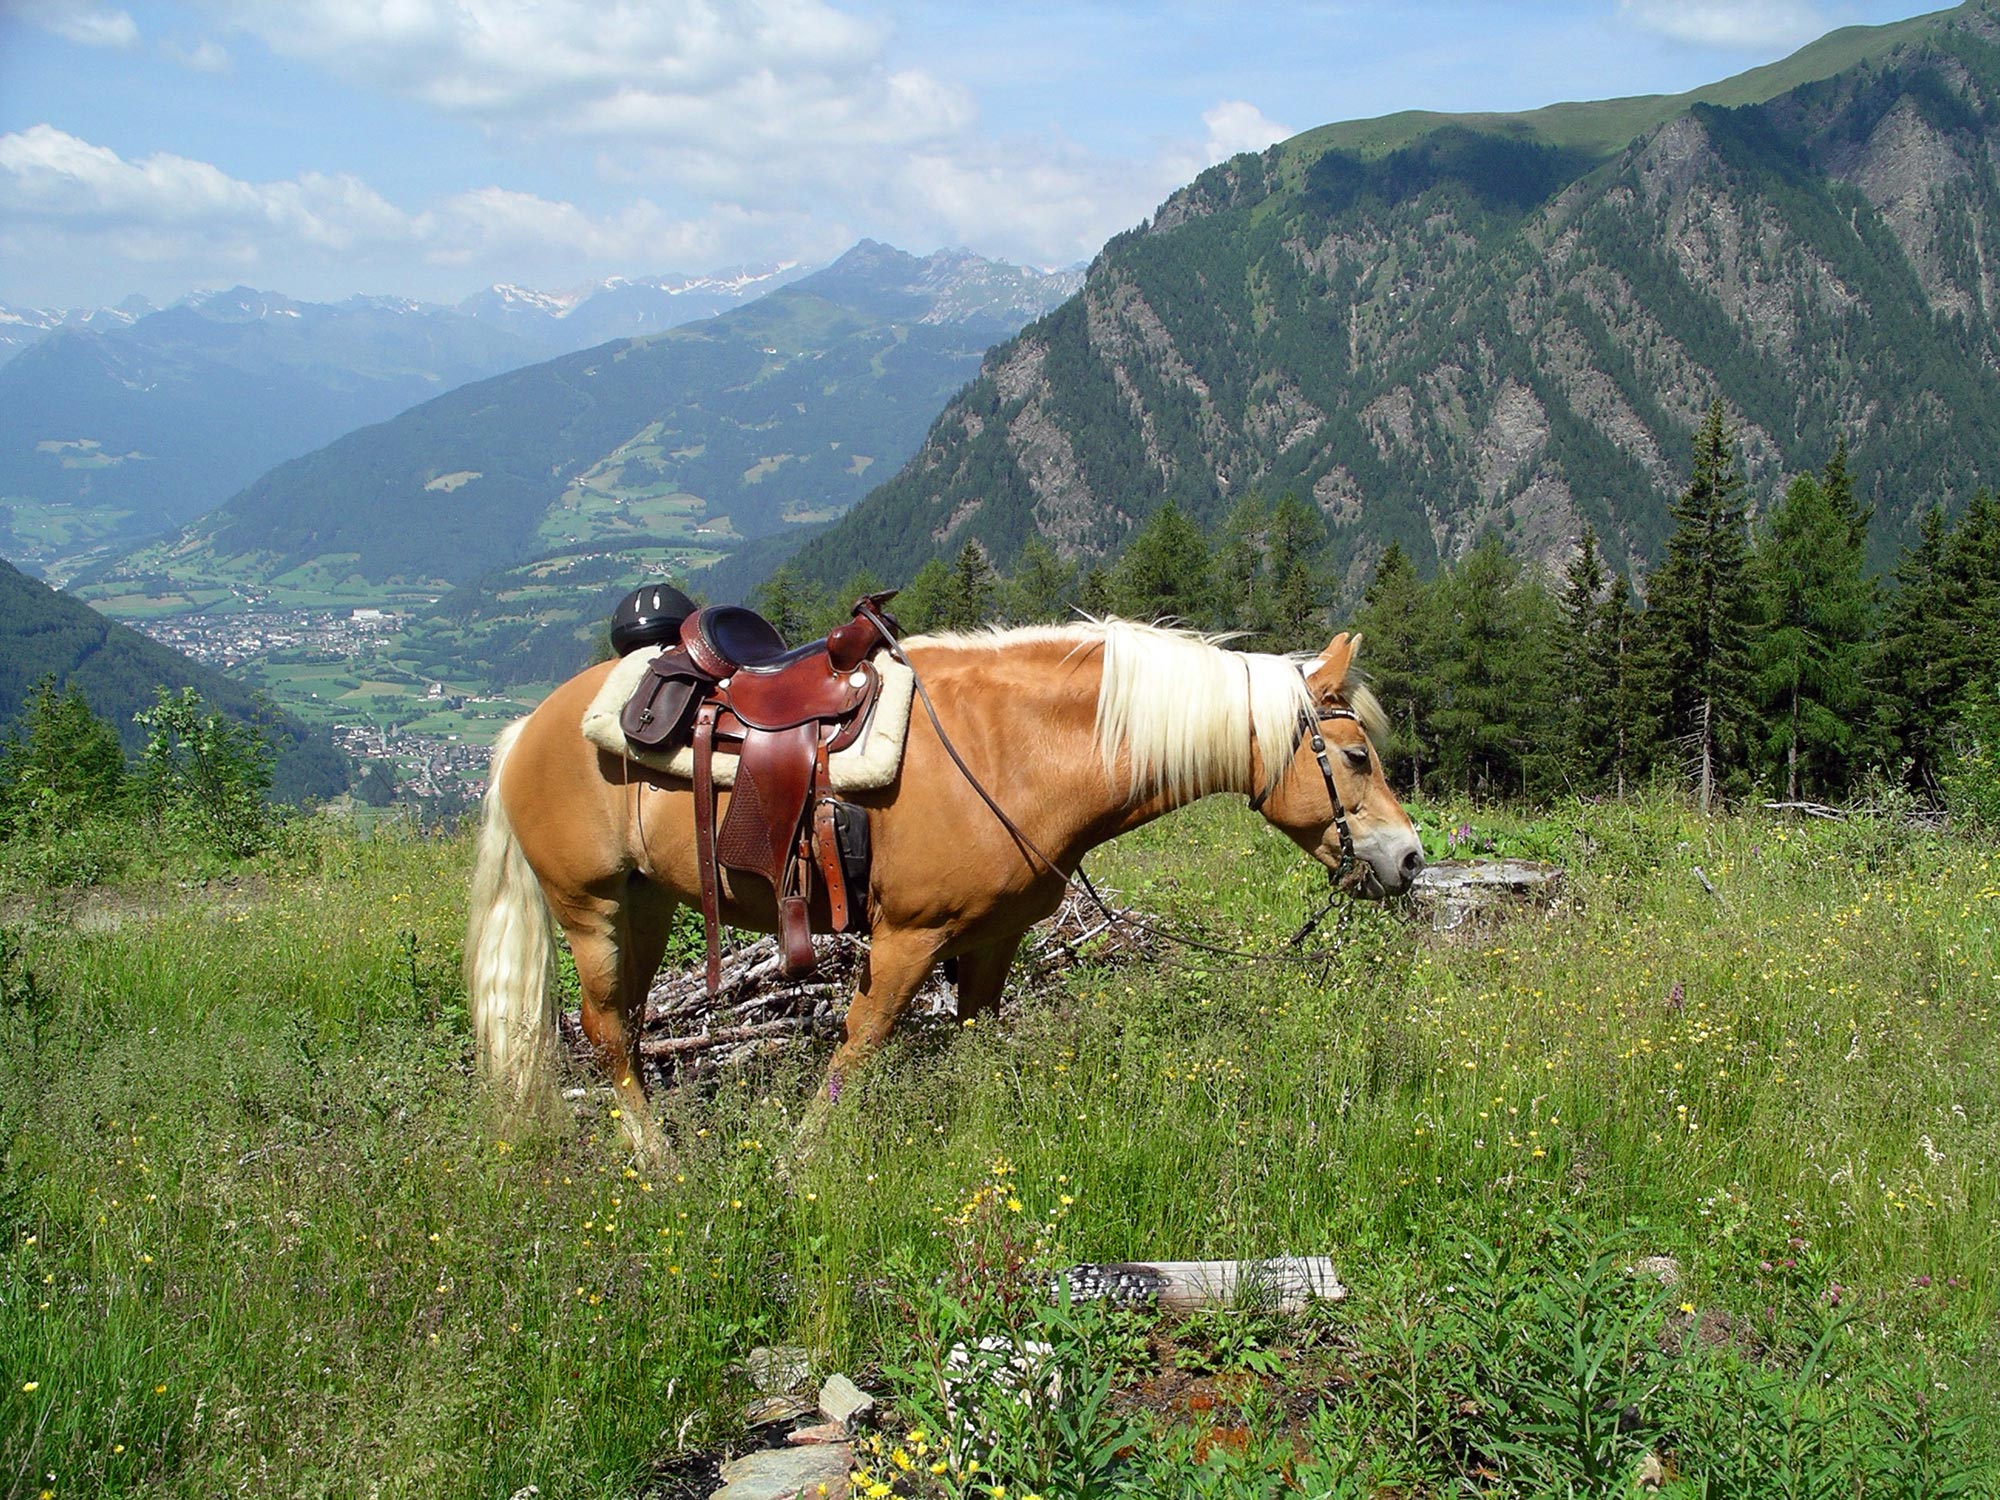 Rudolf albergatore e guida escursionistica a cavallo, abilitata